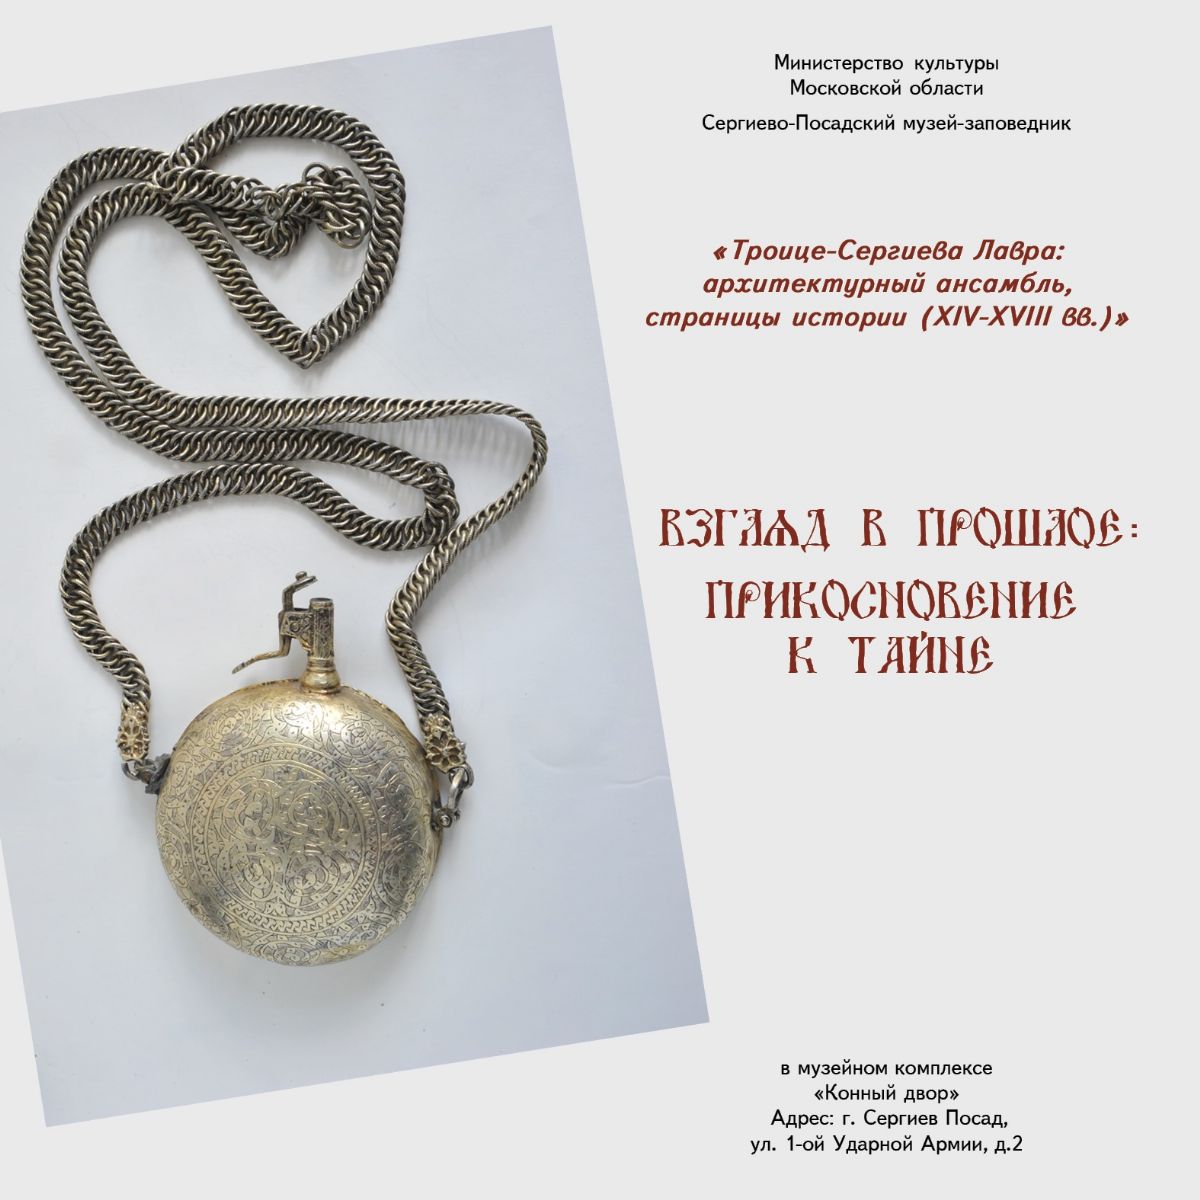 Презентация обновлённой исторической экспозиции в музейном комплексе "Конный двор" - с 18 февраля